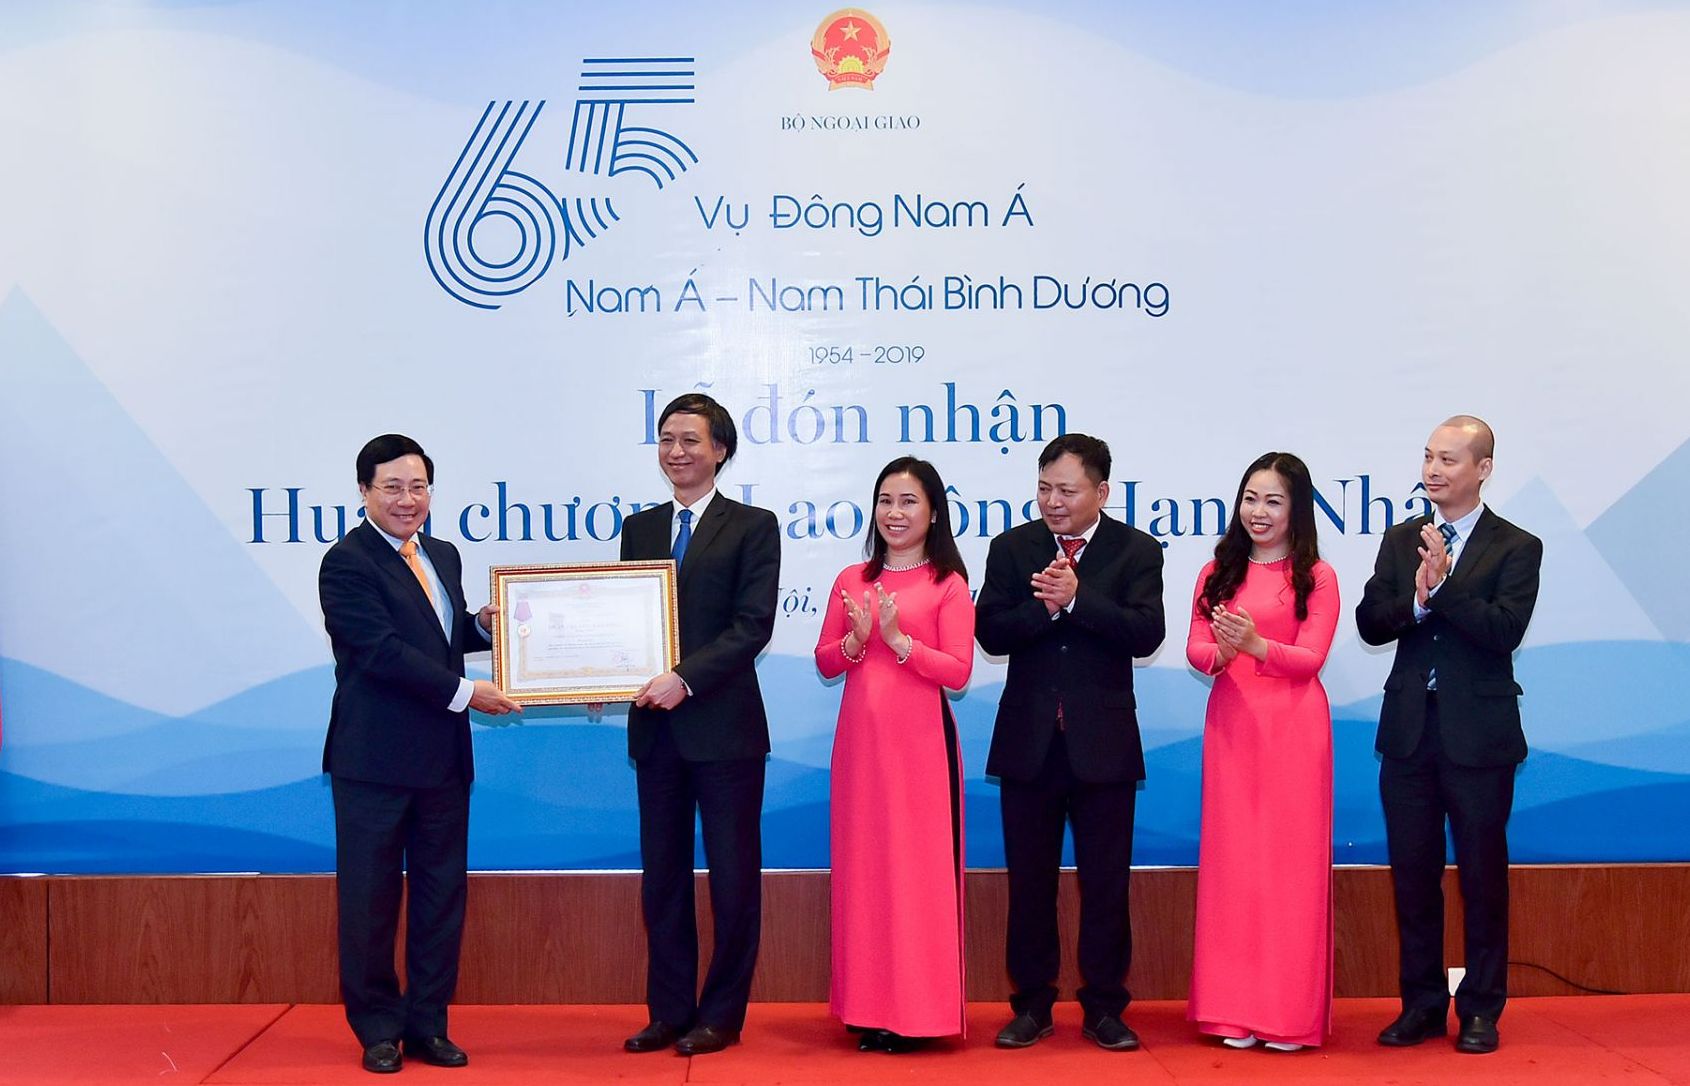 Vụ Đông Nam Á - Nam Á - Nam Thái Bình Dương đón nhận Huân chương Lao động hạng Nhất